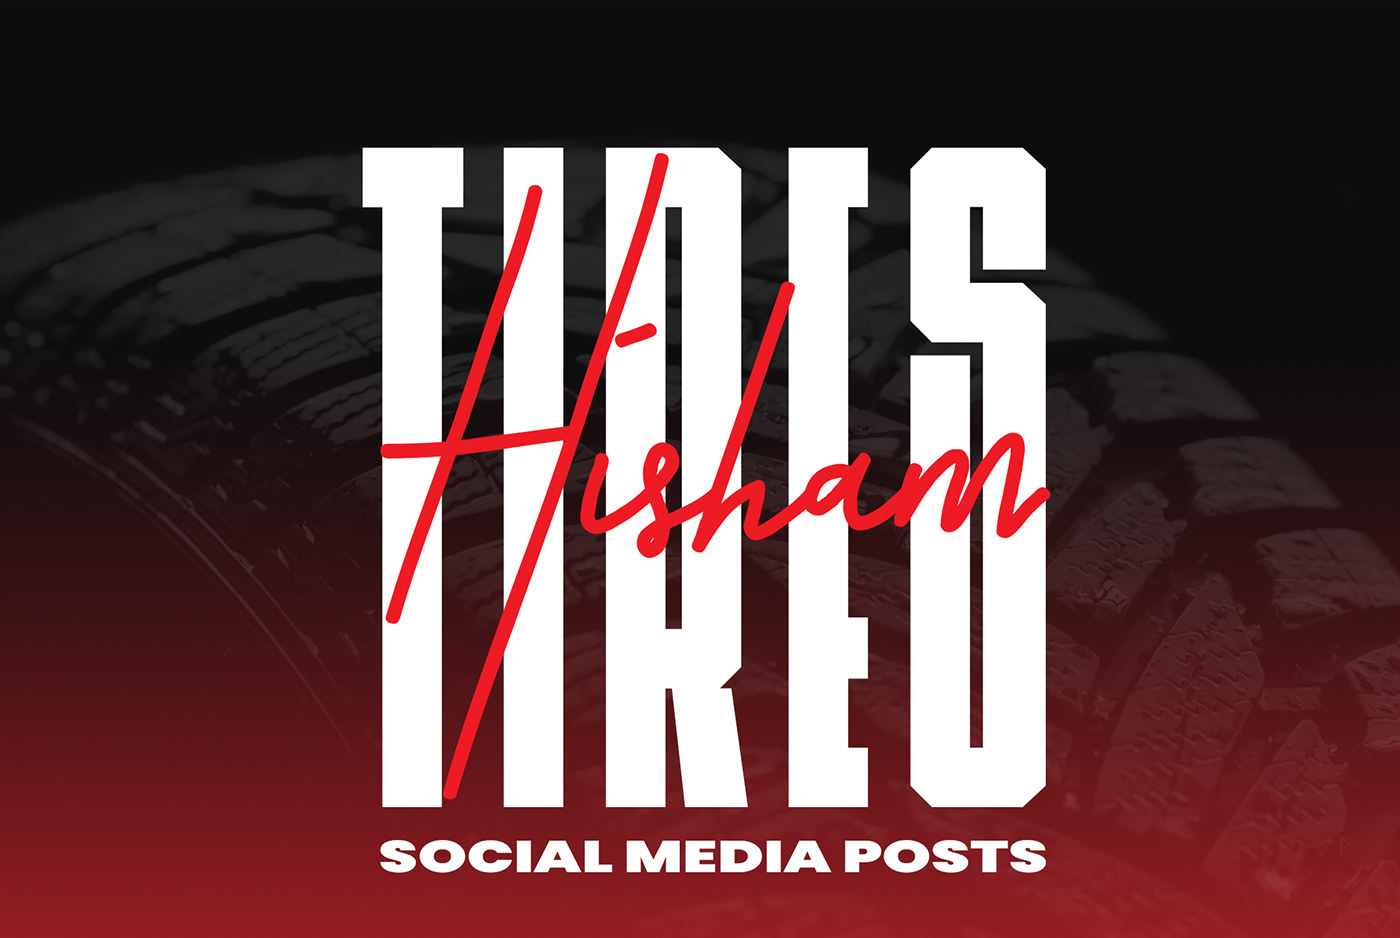 ads Advertising  designer Hesham Tyres Social media post tires Tyer 온라인카지노 ডিজাইন পোস্ট